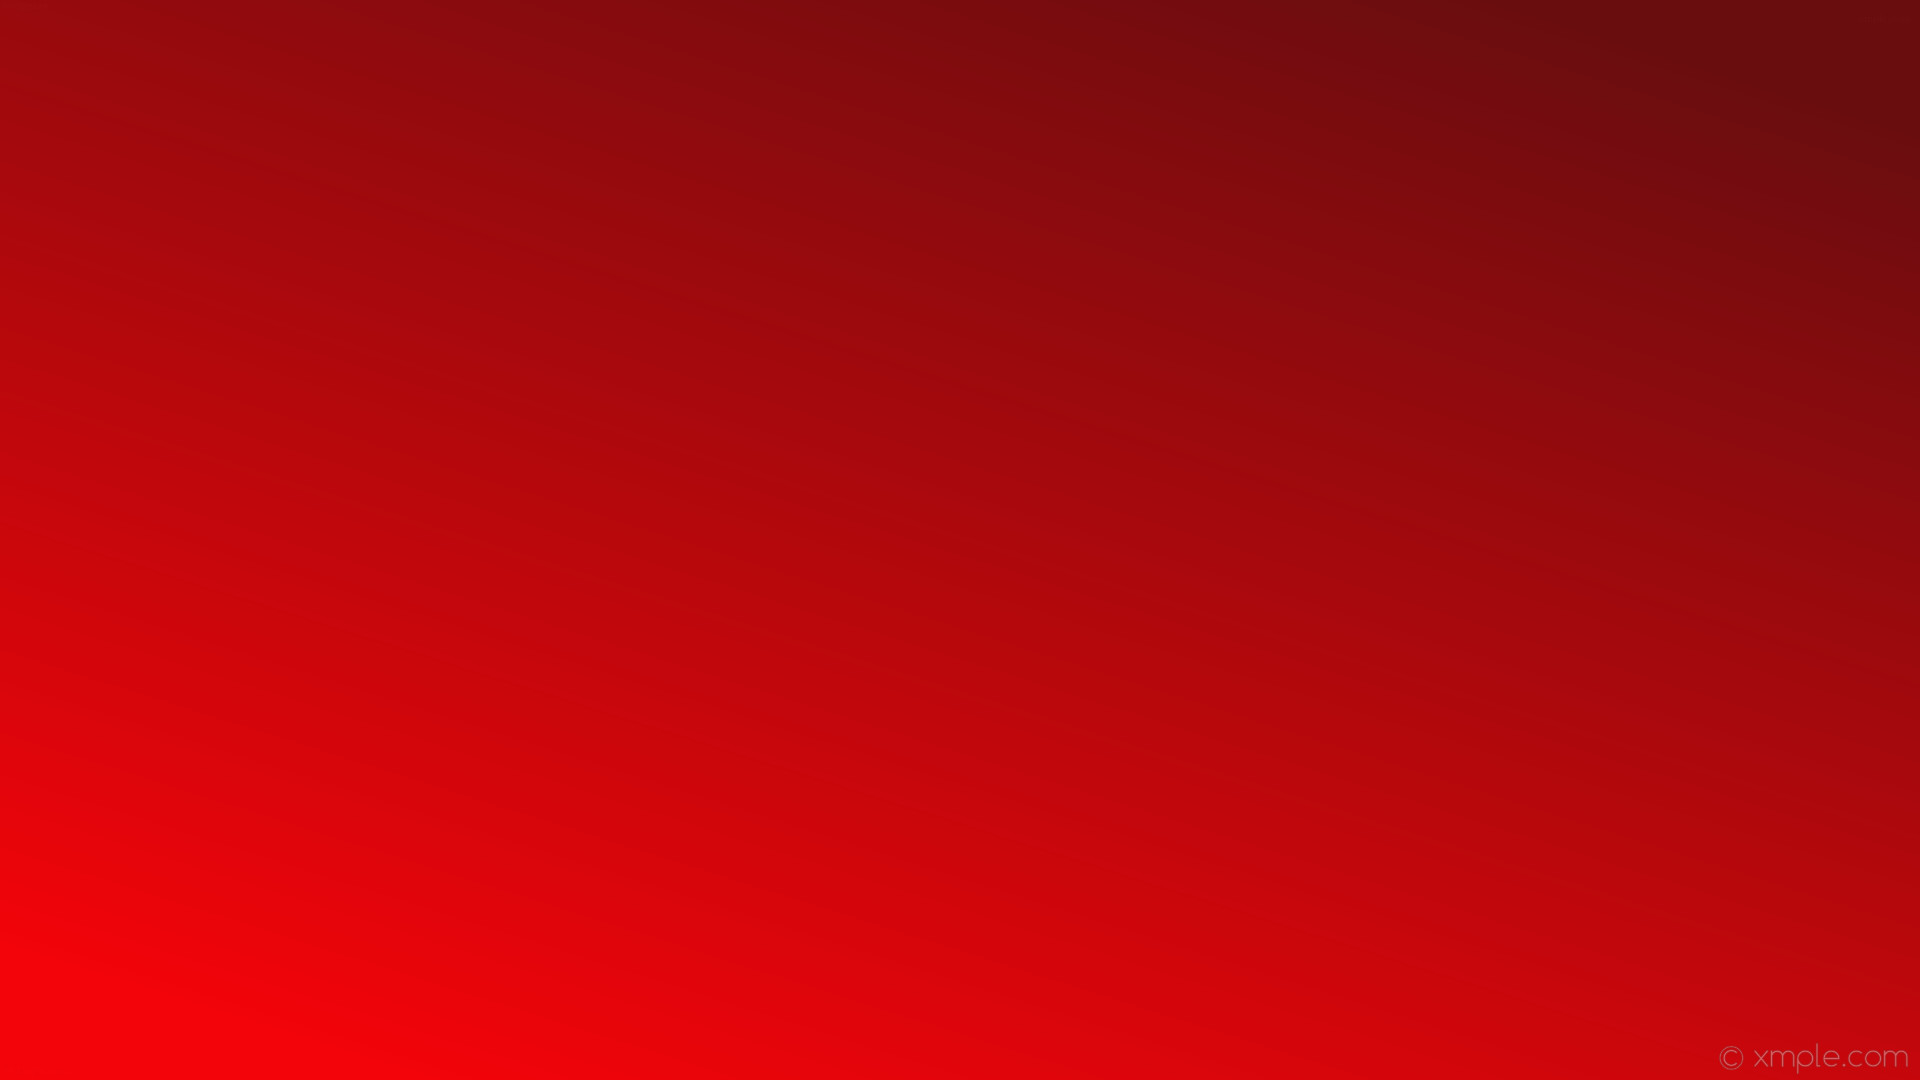 wallpaper linear red gradient #f2040a #6a0d0f 225Â°